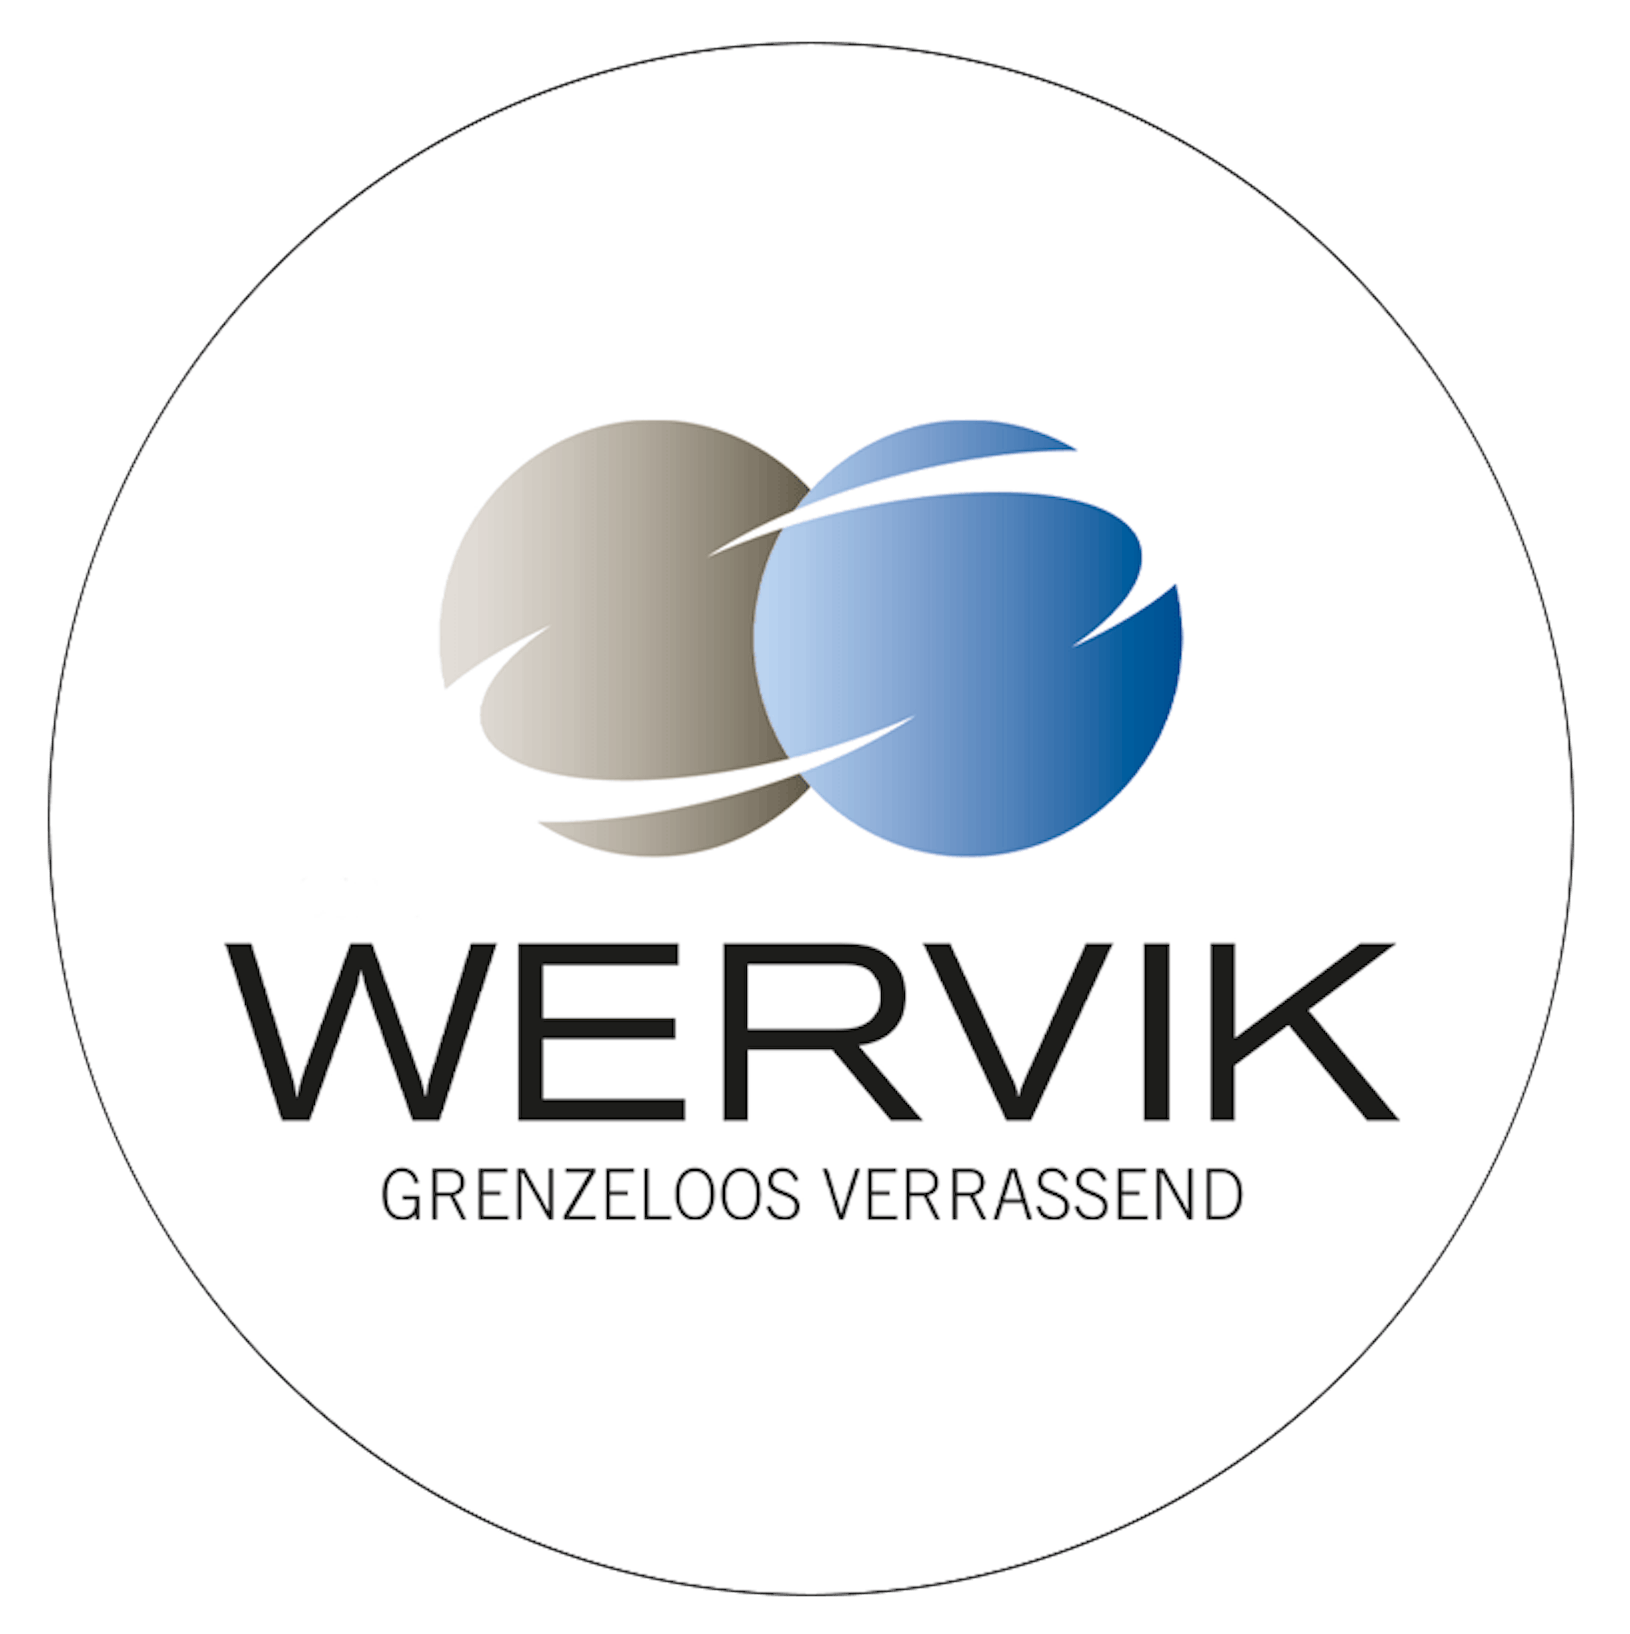 Stad Wervik logo